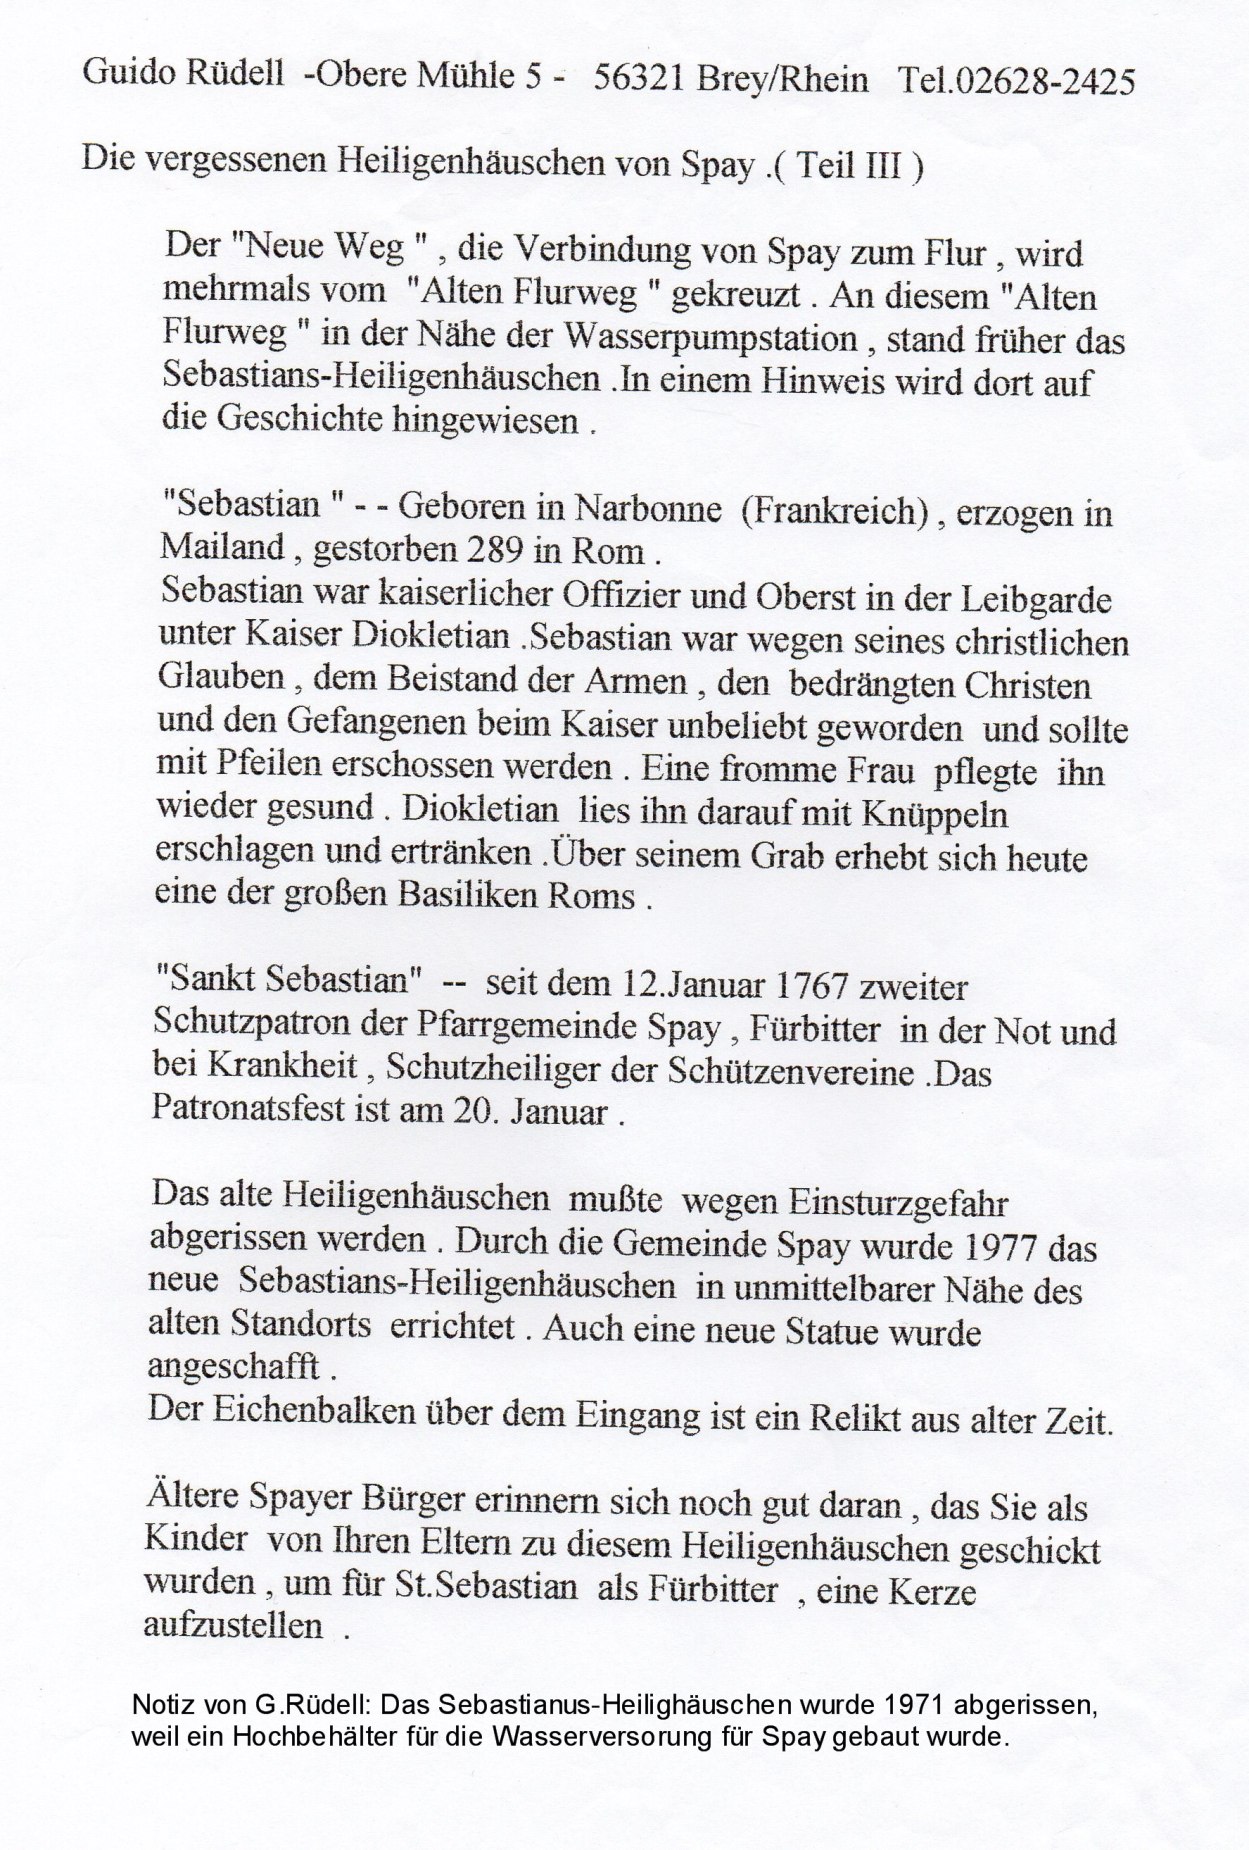 Notizen G. Rüdell St. Sebastianus Heiligenhäuschen | © Bildarchiv Ortsgemeinde Spay